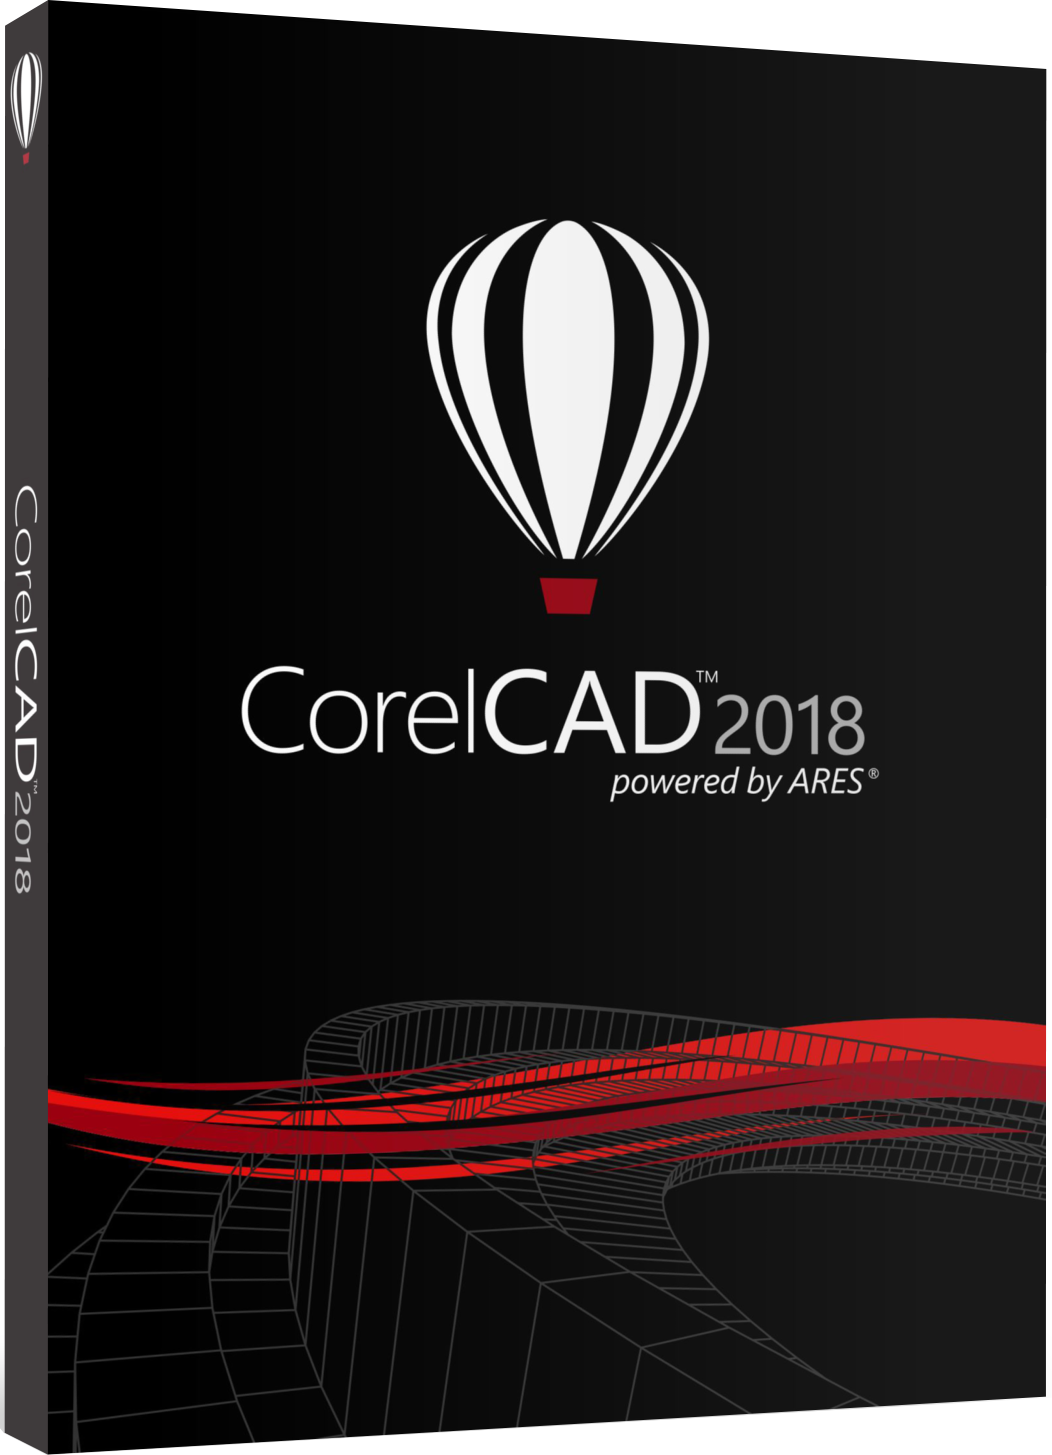 CorelCAD 2018